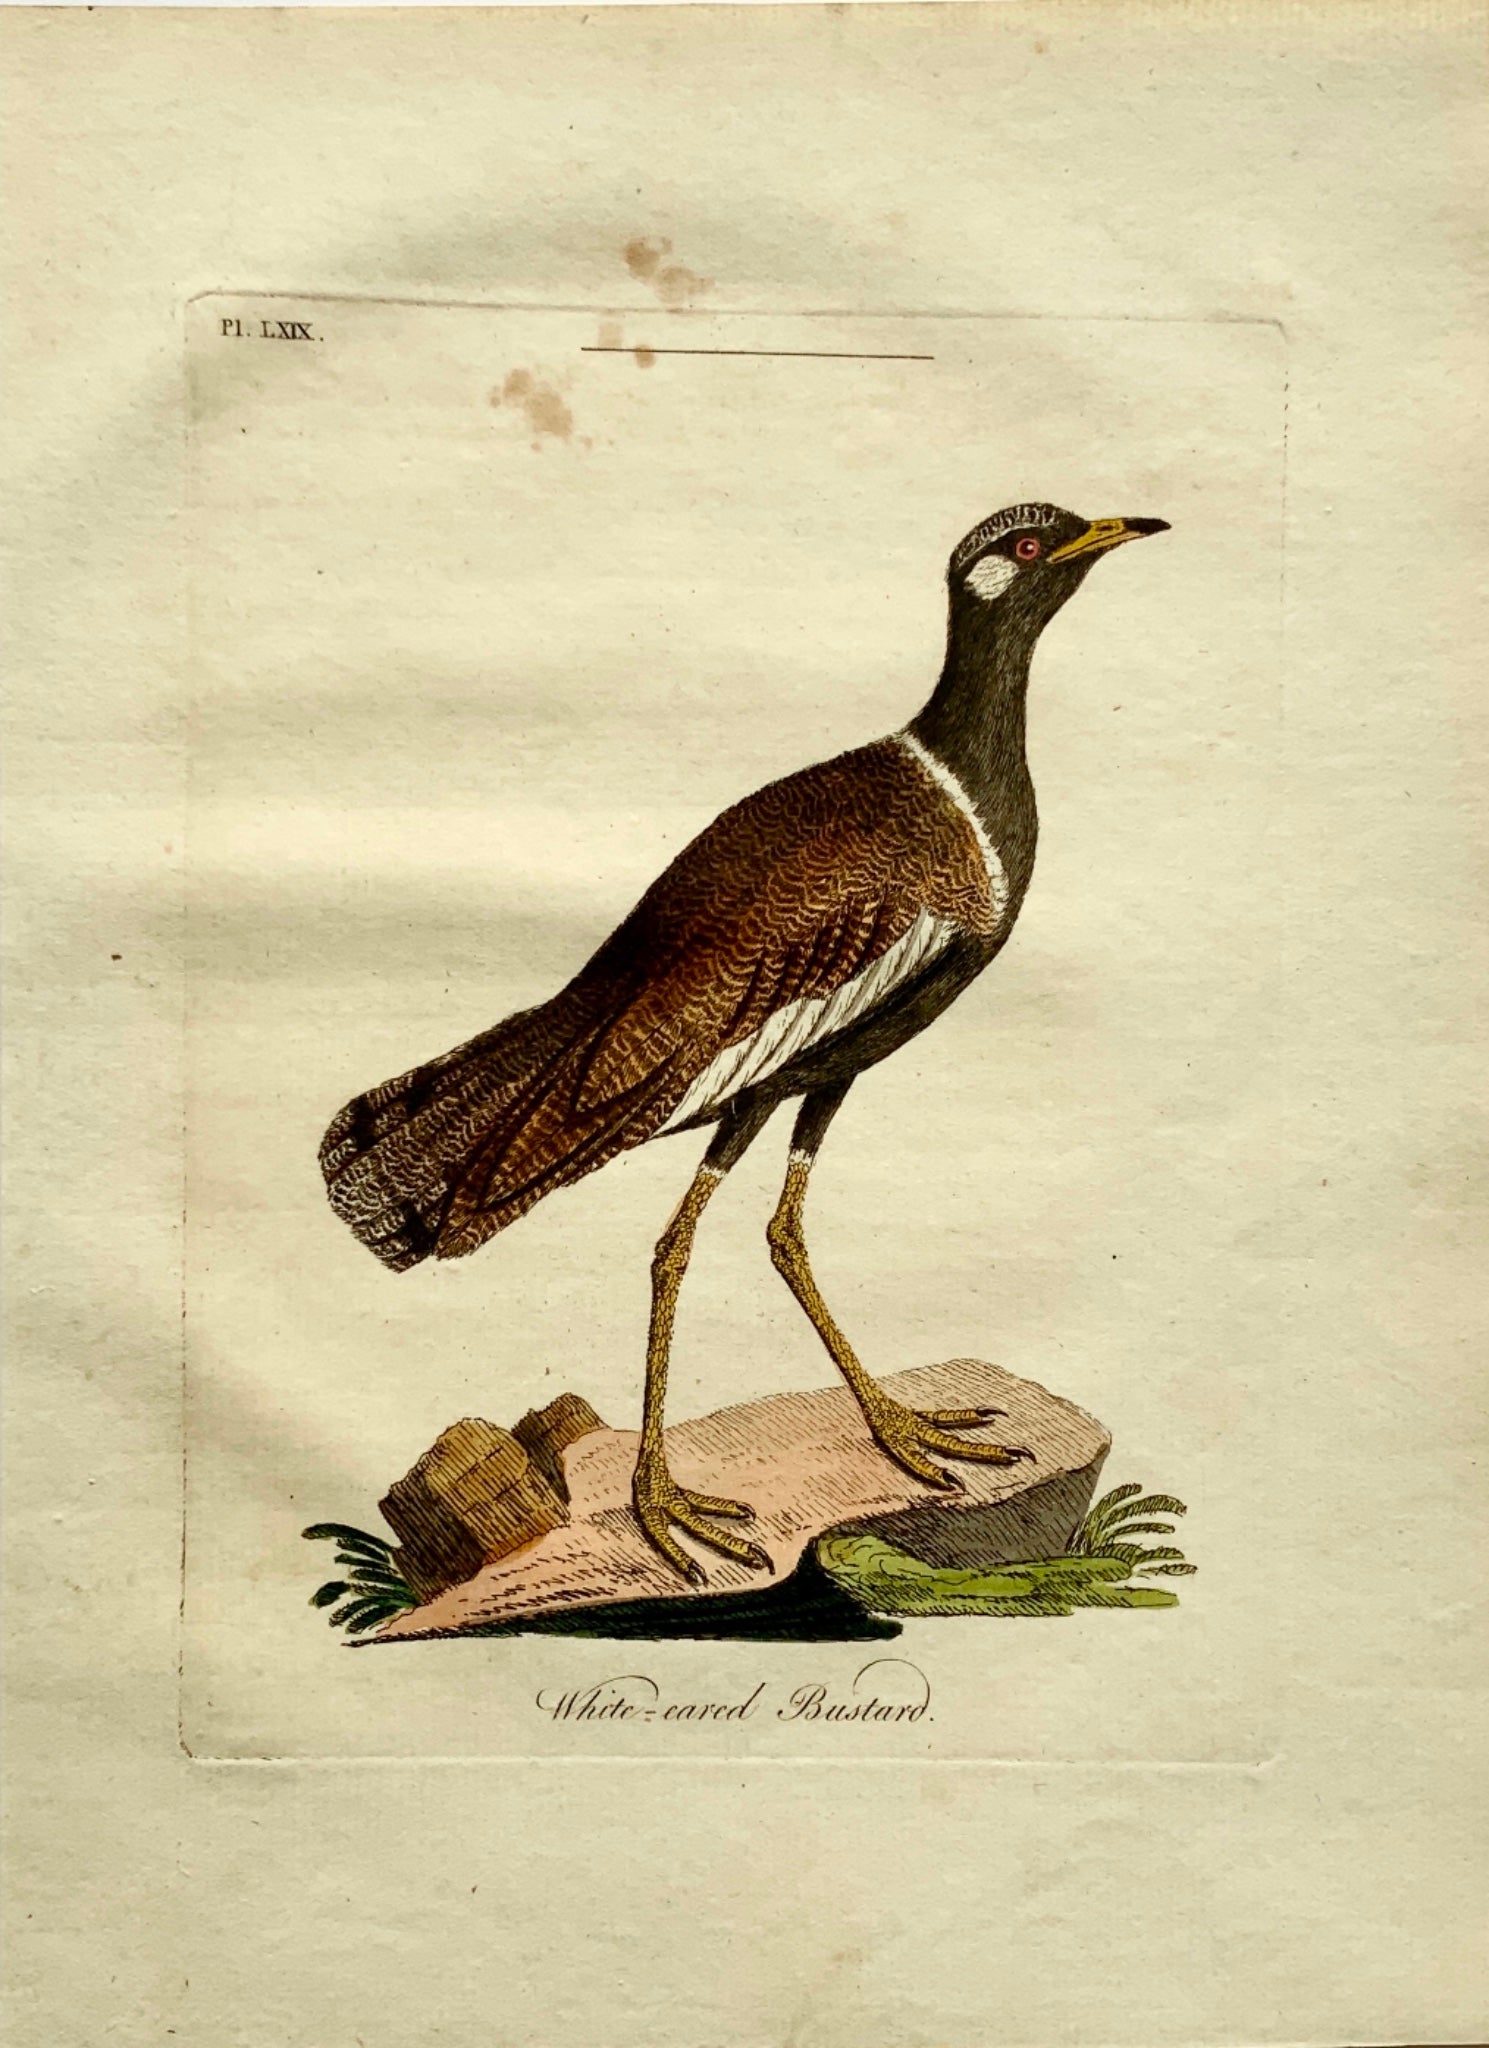 1785 John Latham - Synopsis - White-Eared BUSTARD Ornithology - hand coloured